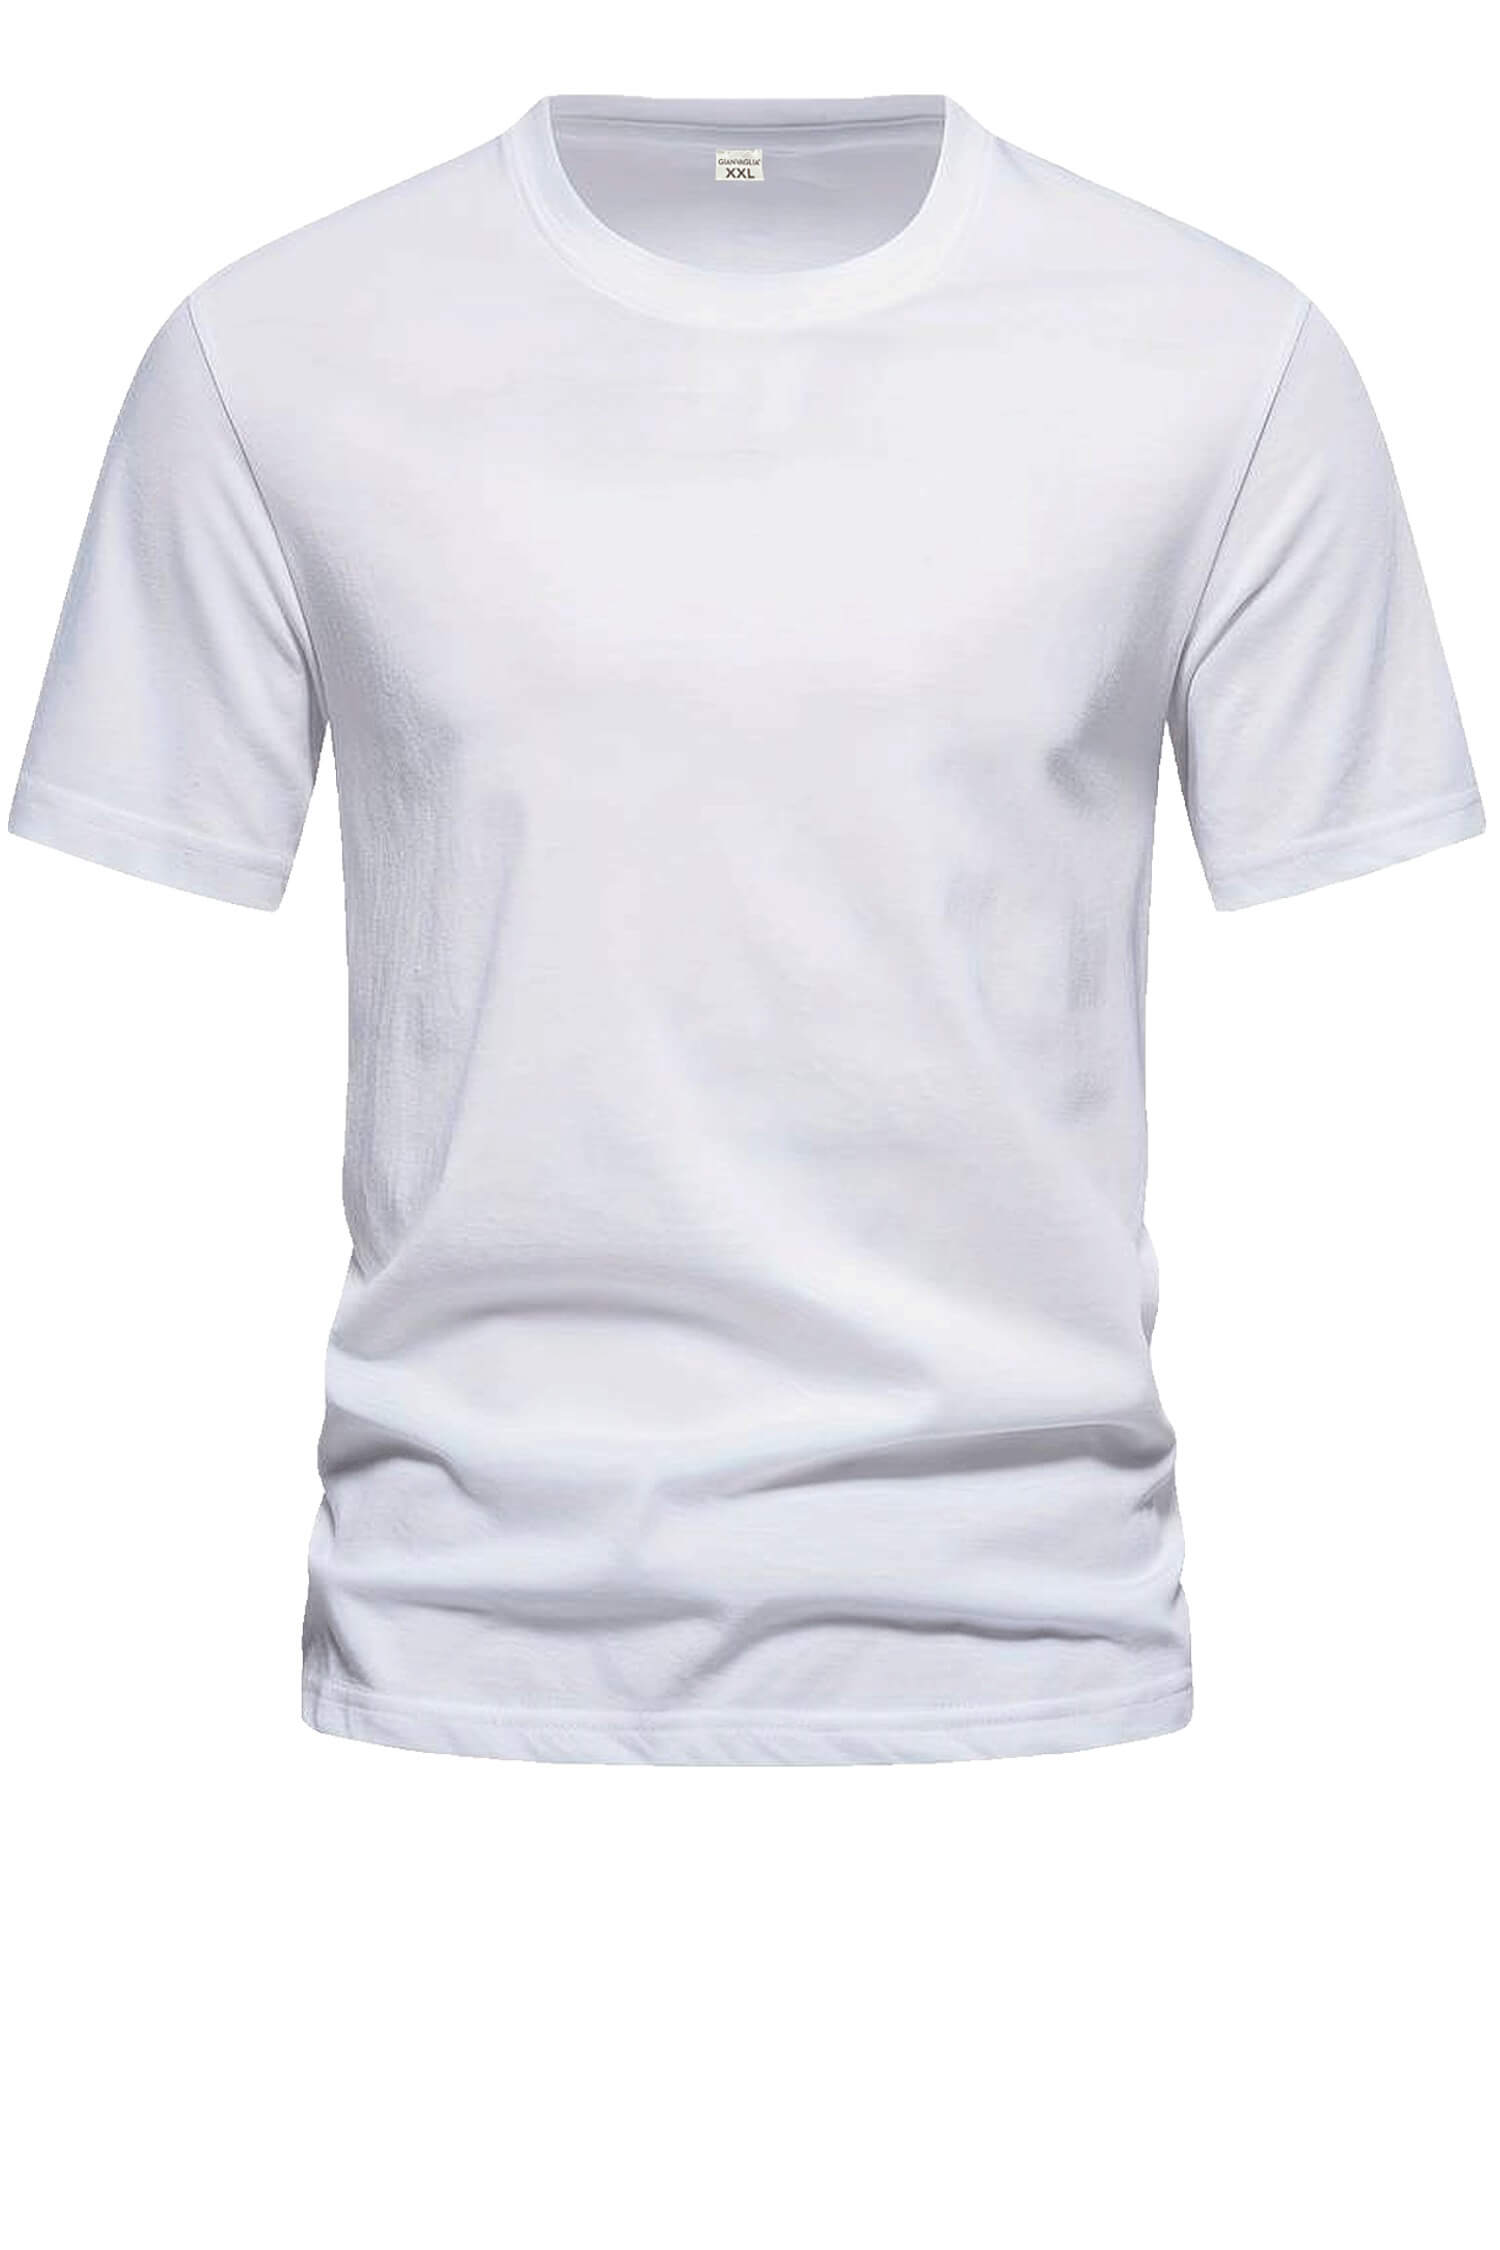 Bořek pánské klasické tričko TS-1006 L bílá